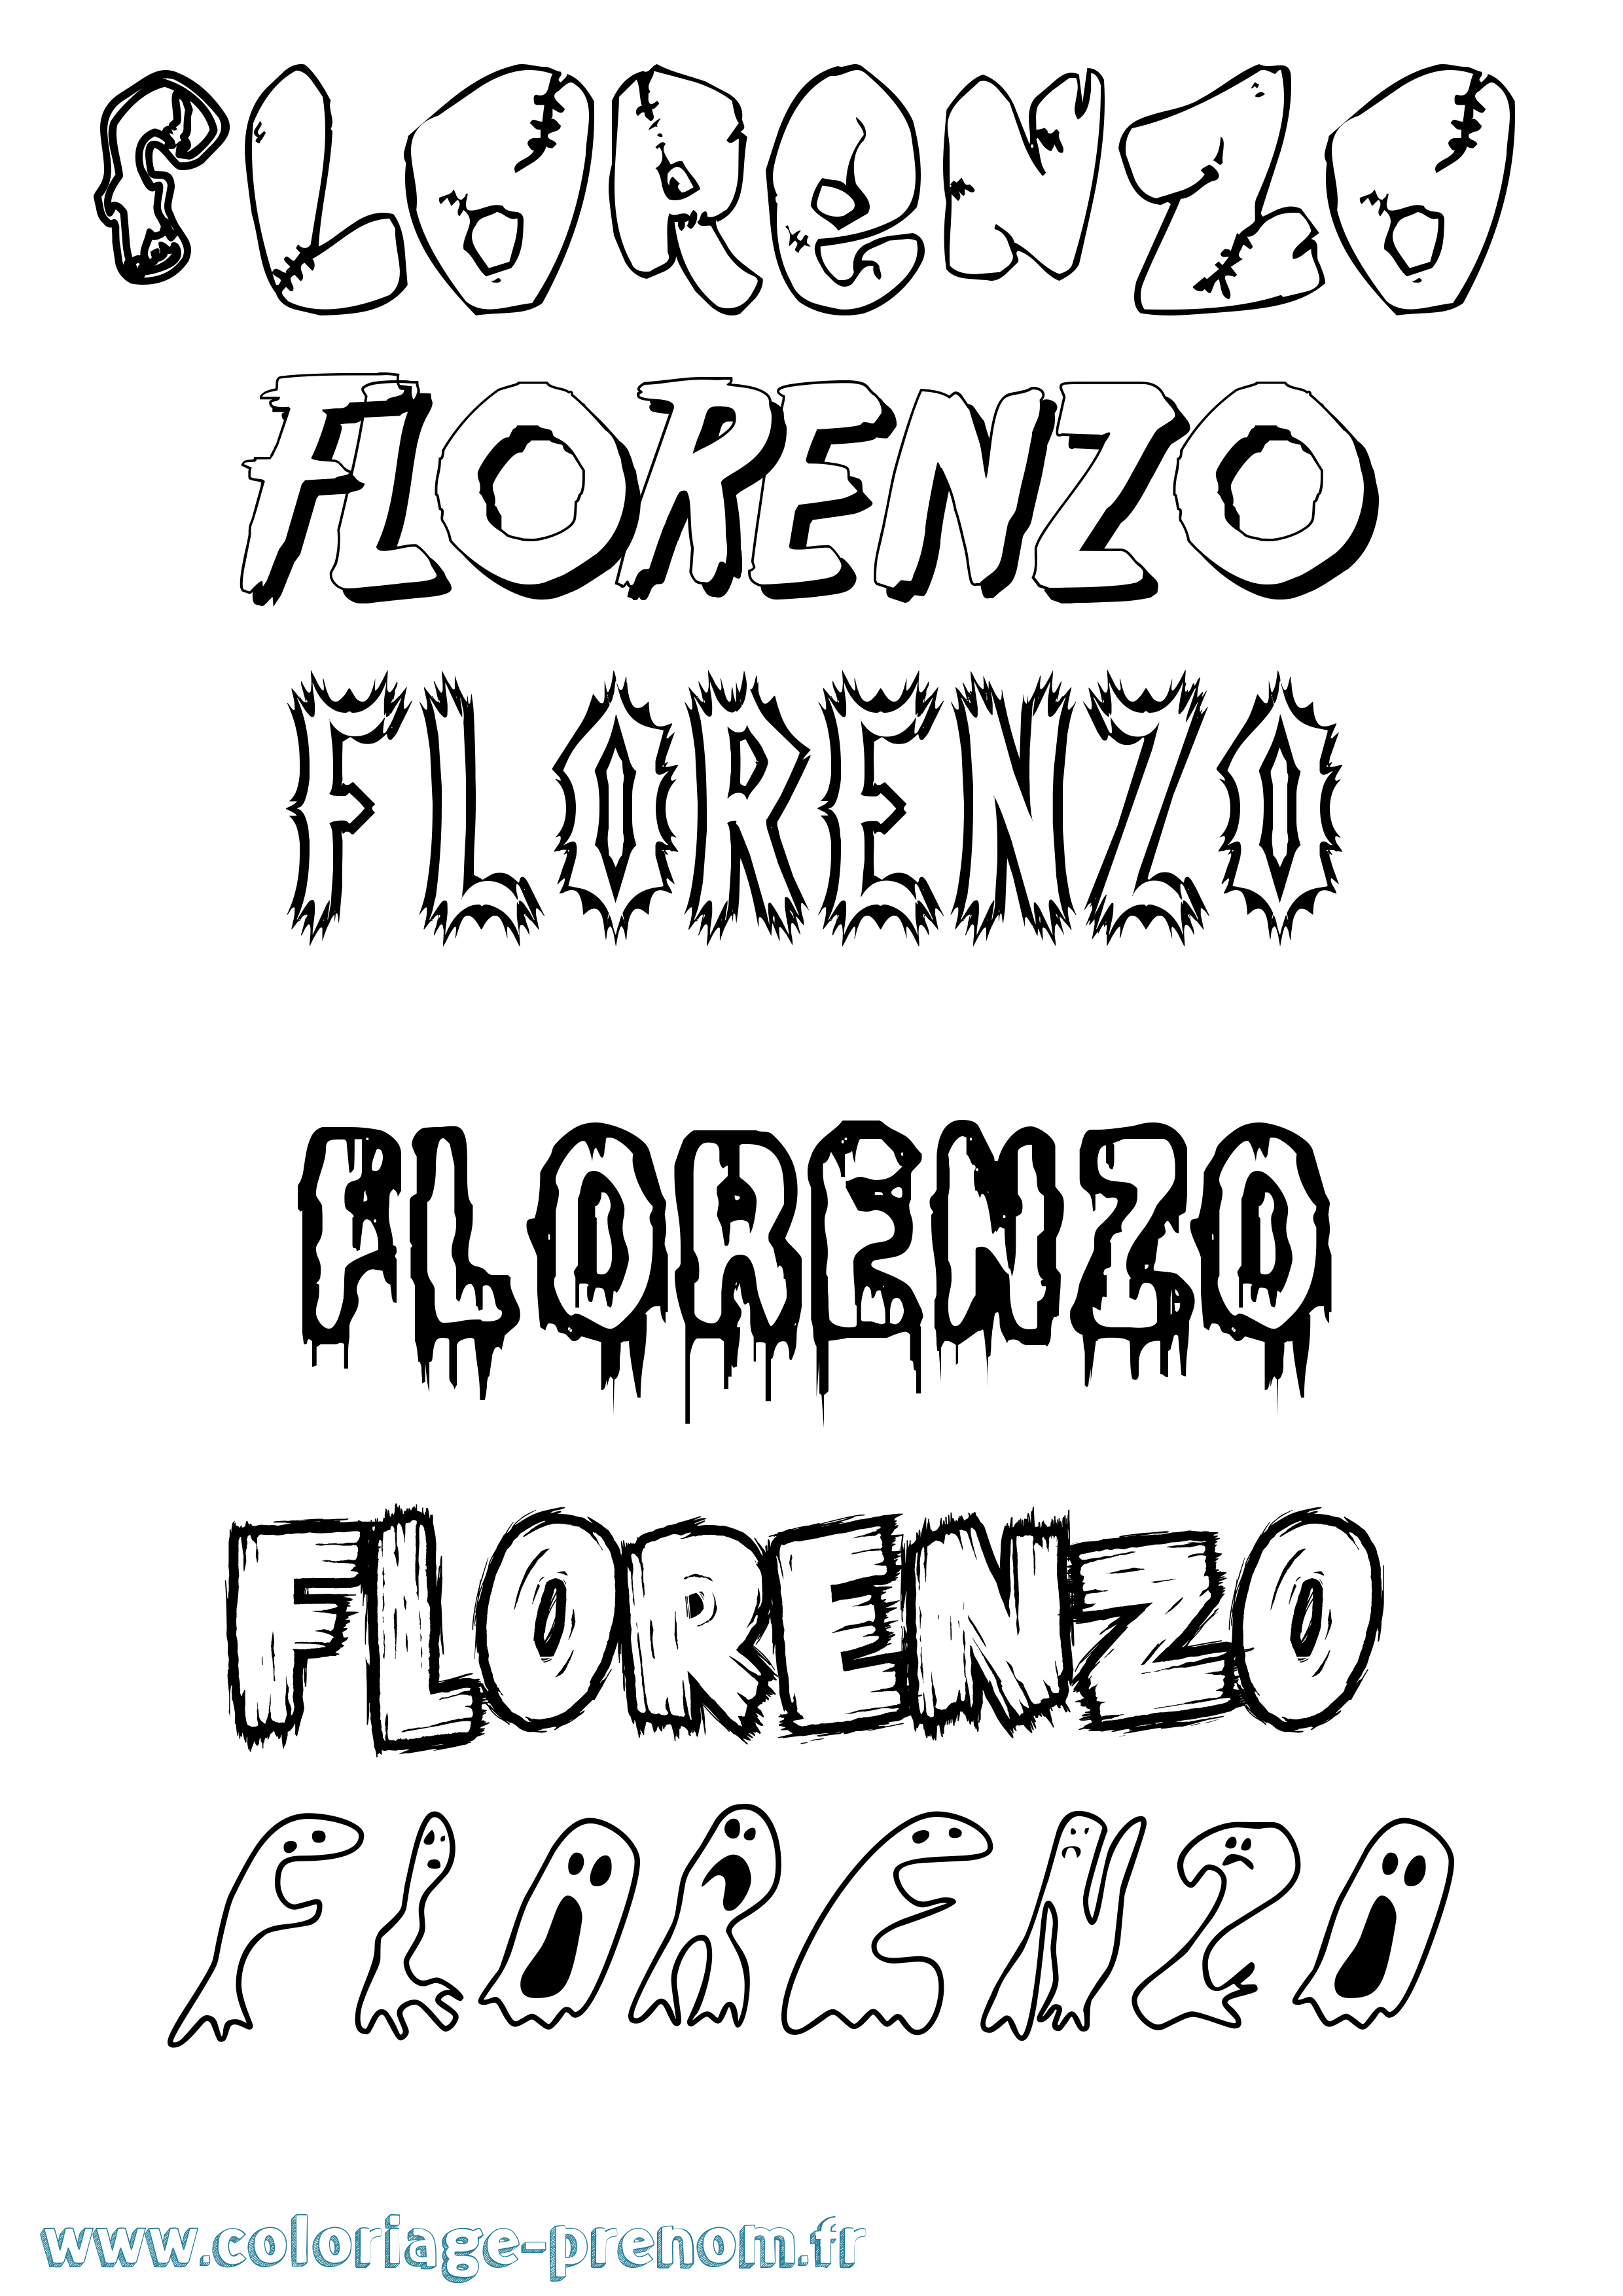 Coloriage prénom Florenzo Frisson